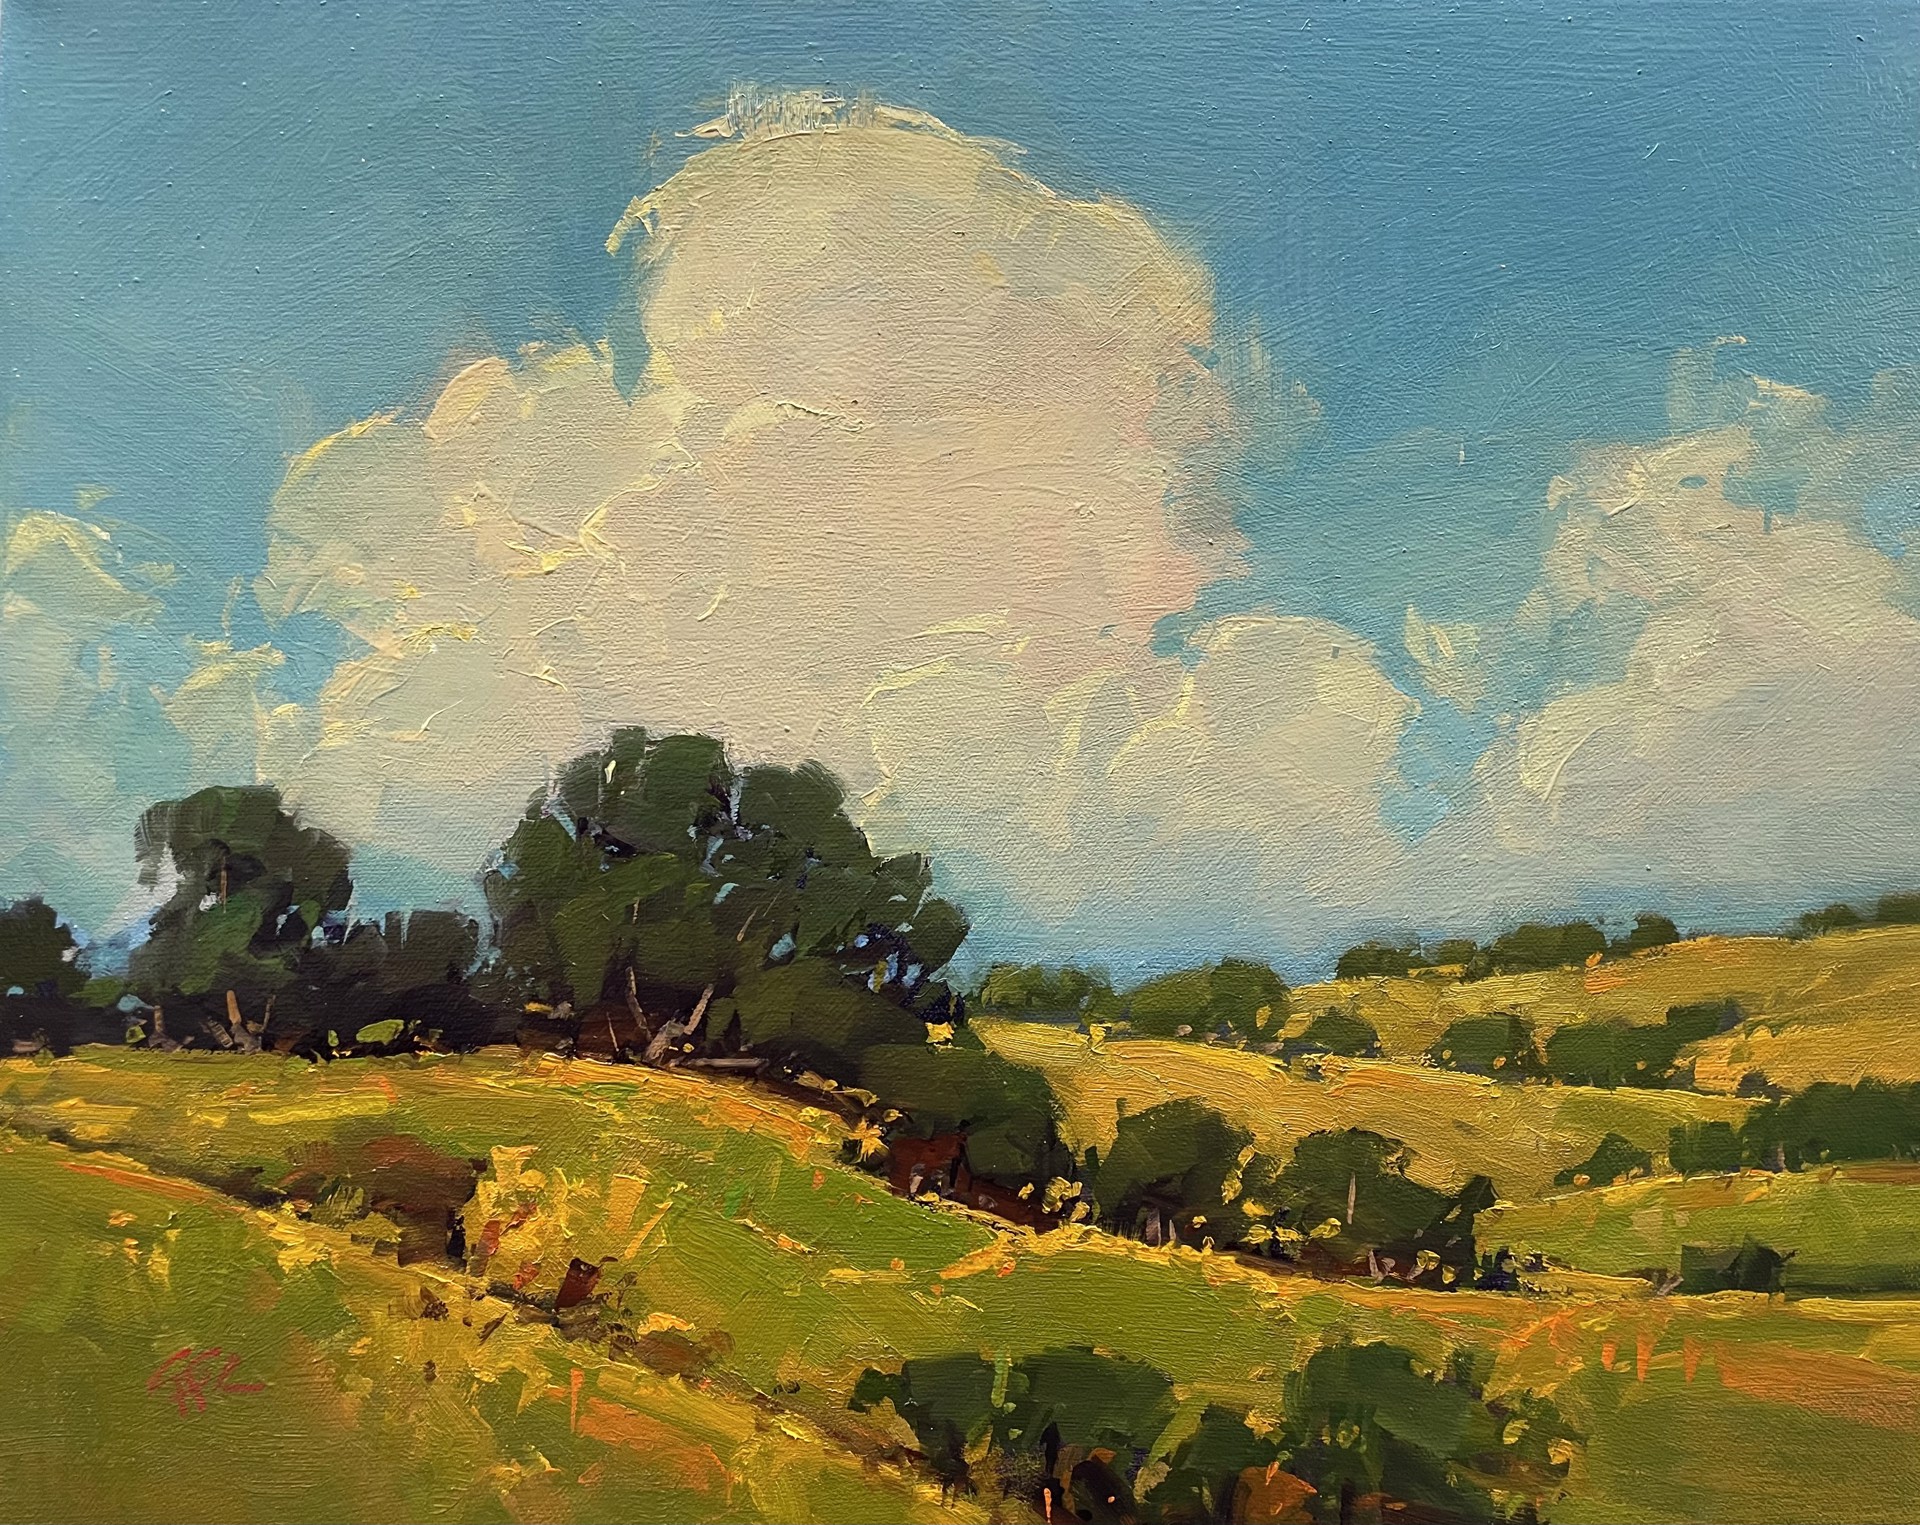 Oak Cloudscape by Gregory Stocks